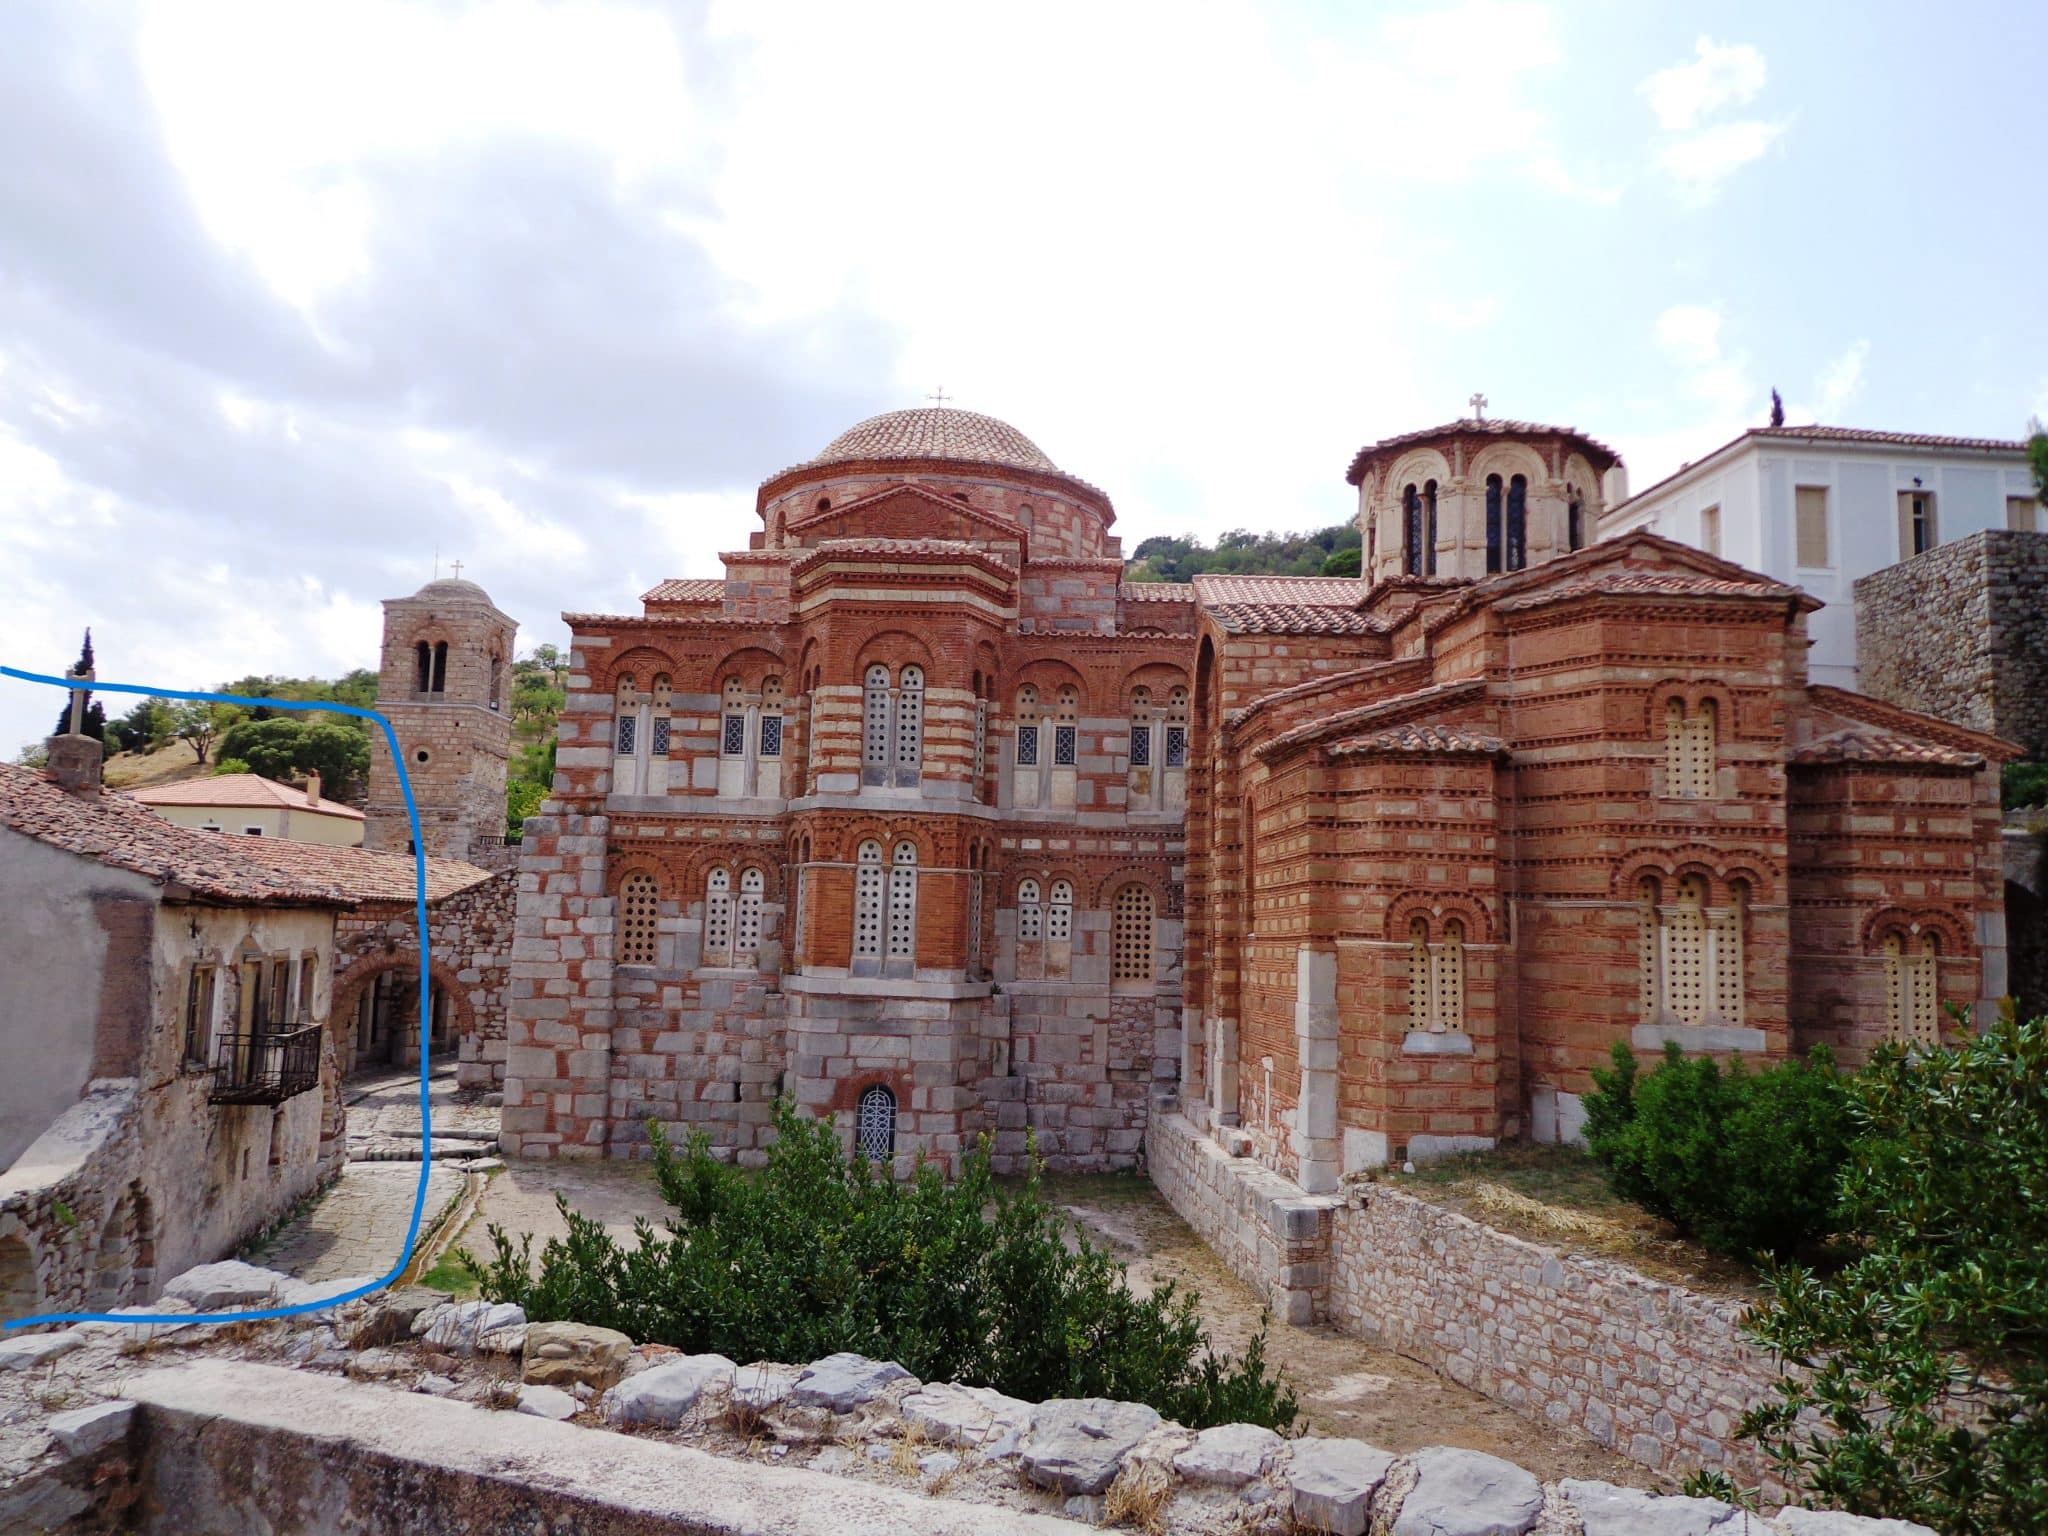 ΦωτογραφίααπόΕΦΑΒοιωτίας μεσημείωσητοκτήριοΙωάσαφ scaled - Μονή Οσίου Λουκά: Εγκρίθηκε η αποκατάσταση μετά την φωτιά στη Βοιωτία - Το καλύτερα διατηρημένο μοναστηριακό συγκρότημα της μεσοβυζαντινής περιόδου (εικόνες)